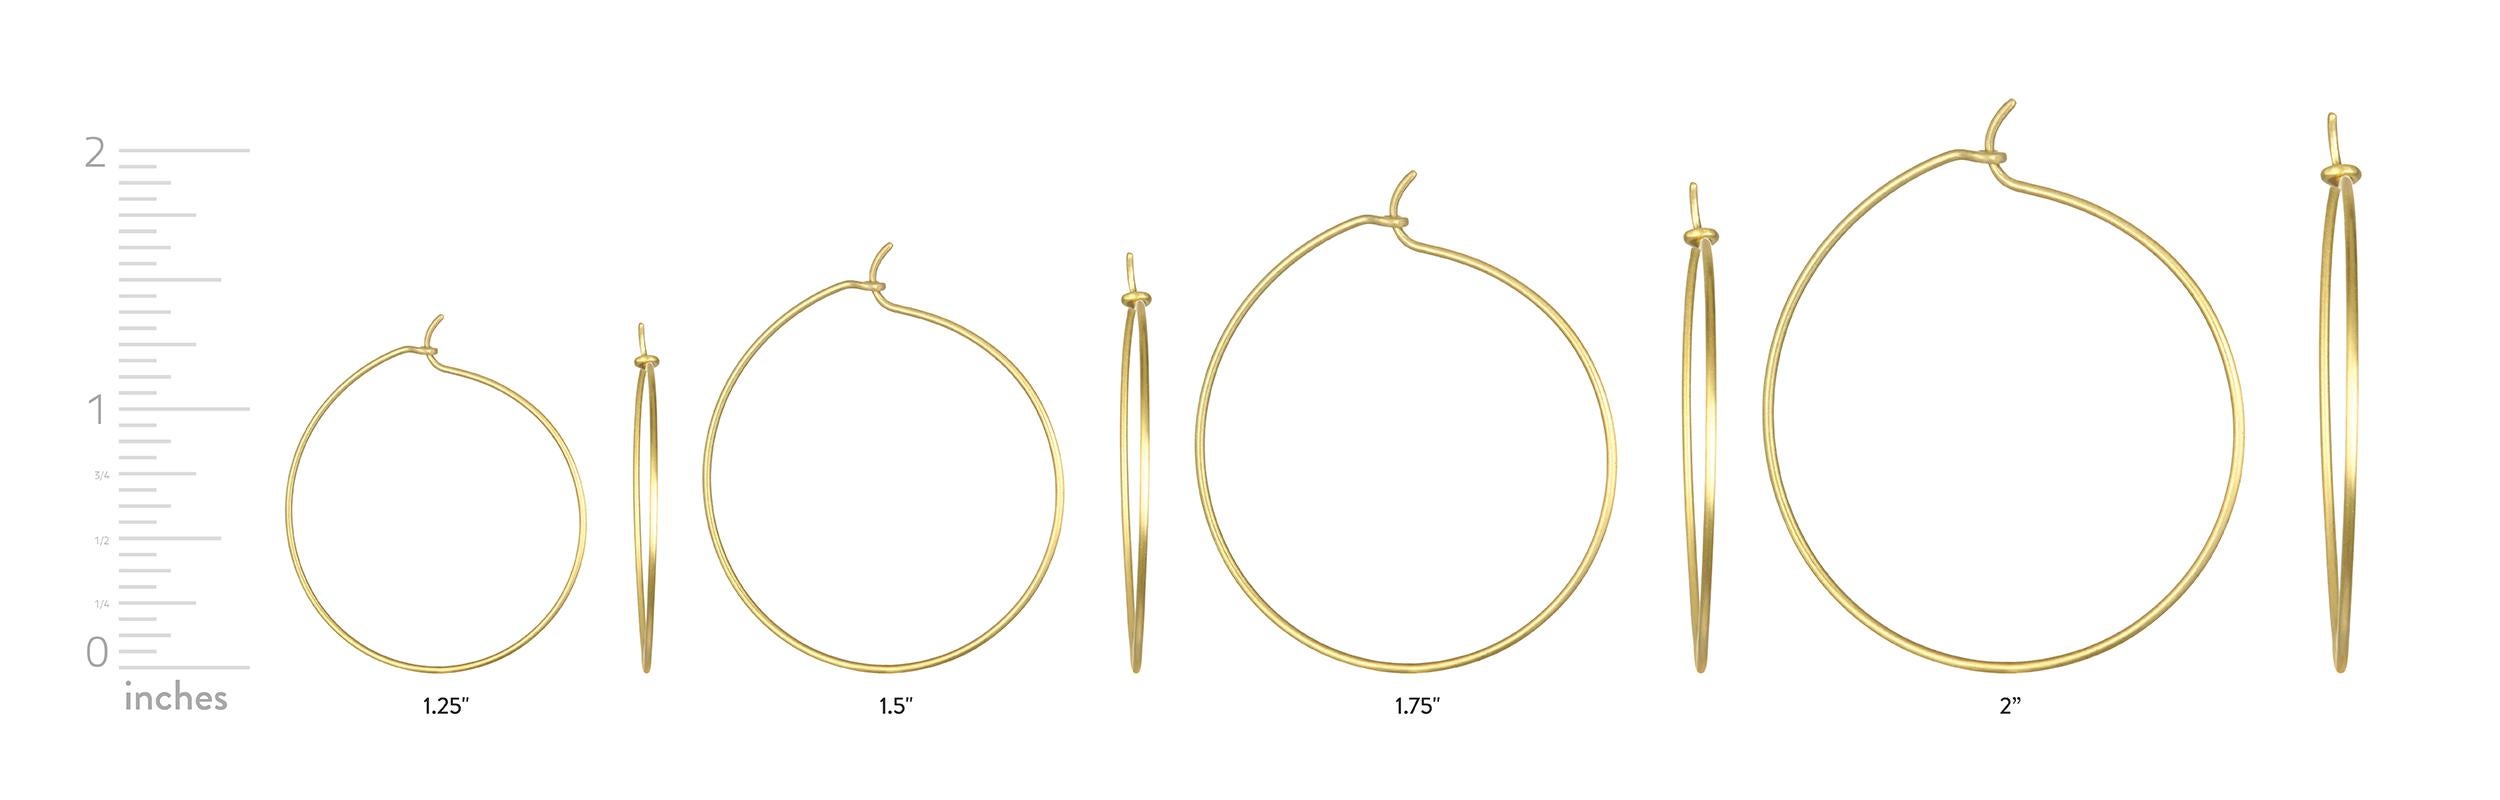 Les anneaux en fil d'or 18 carats faits à la main de Faye Kim sont indispensables à toute garde-robe de bijoux. Décontractés, chics et portables tous les jours, les anneaux offrent des possibilités infinies de changer de look avec différentes